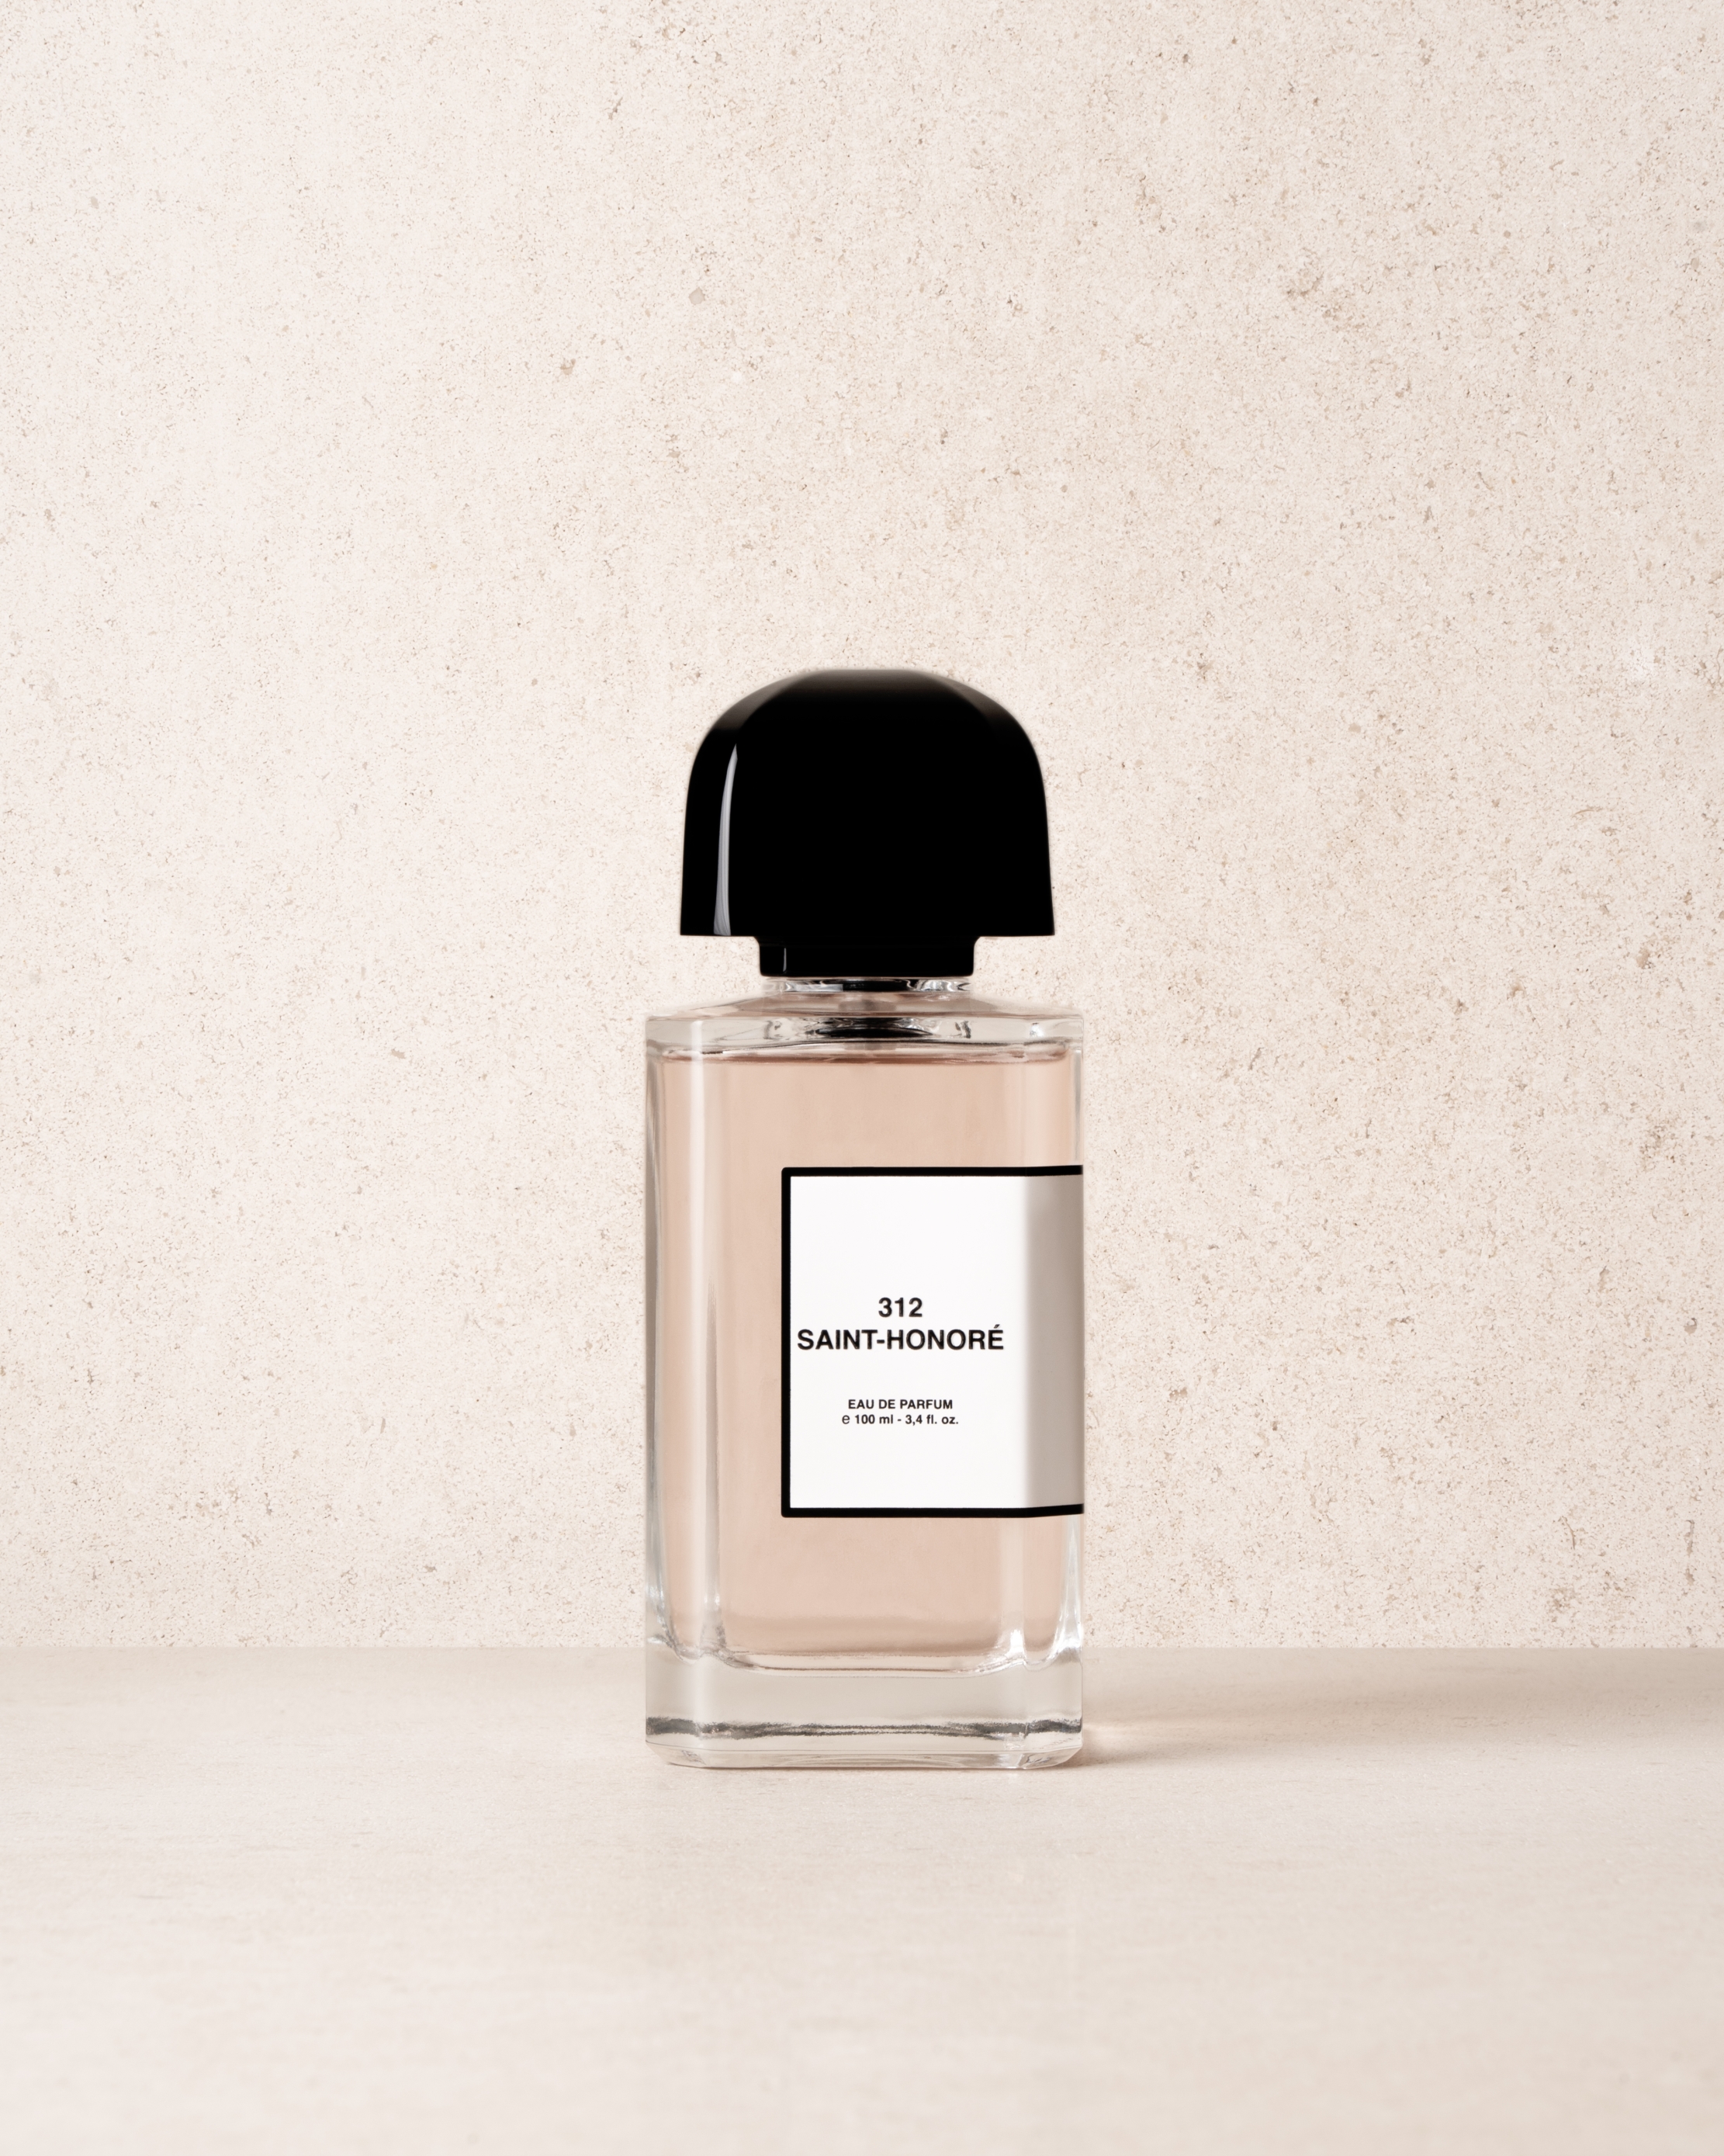 312 Saint-Honoré parfem je najnoviji miris brenda BDK Parfums